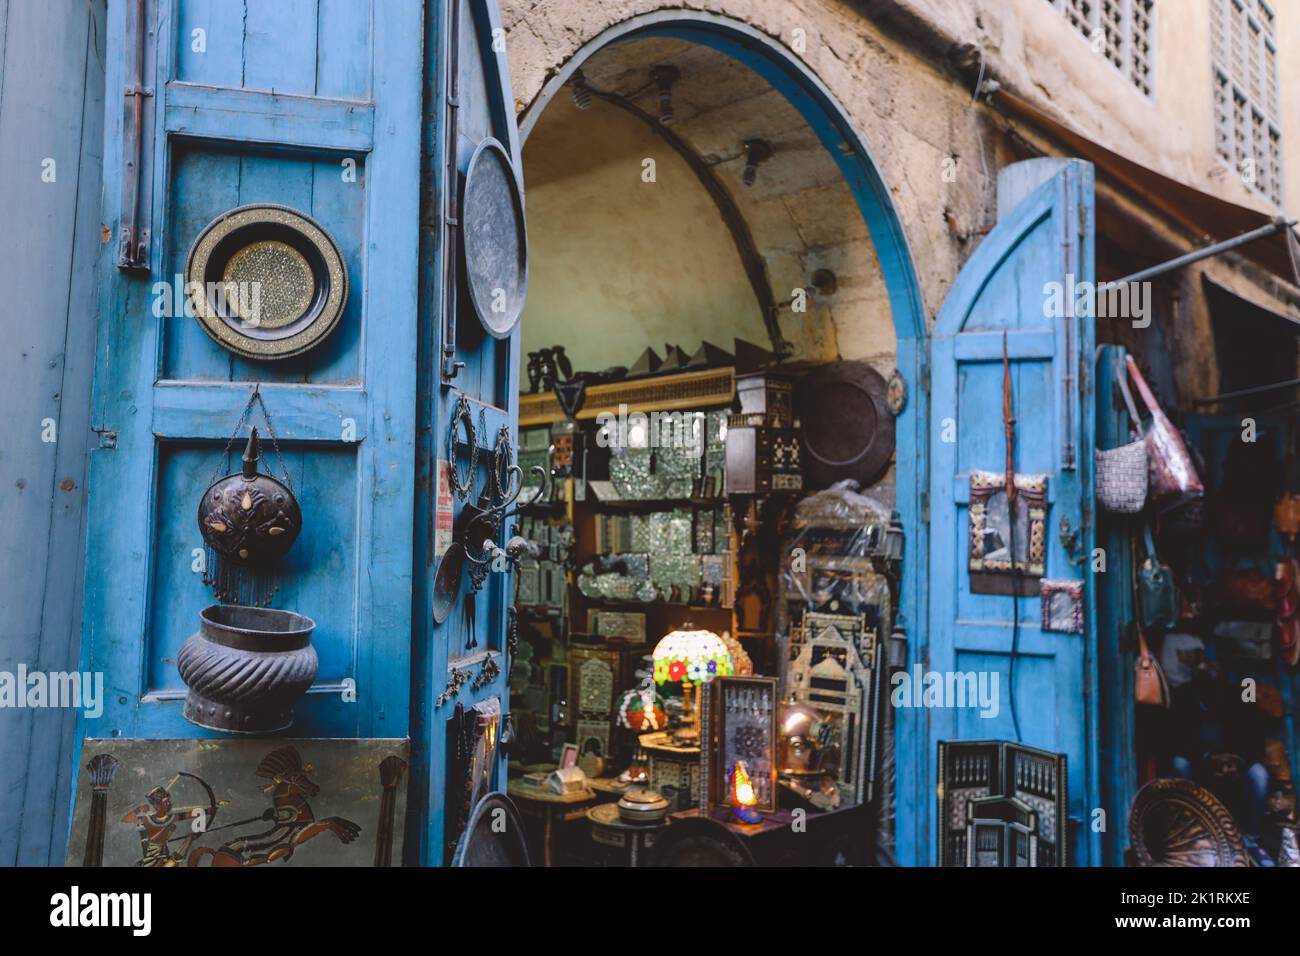 Cairo, Egitto - 15 novembre 2020: Souvenir turistici sul Khan el-Khalili, famoso bazar e souq (o souk) nel centro storico del Cairo, Egitto Foto Stock